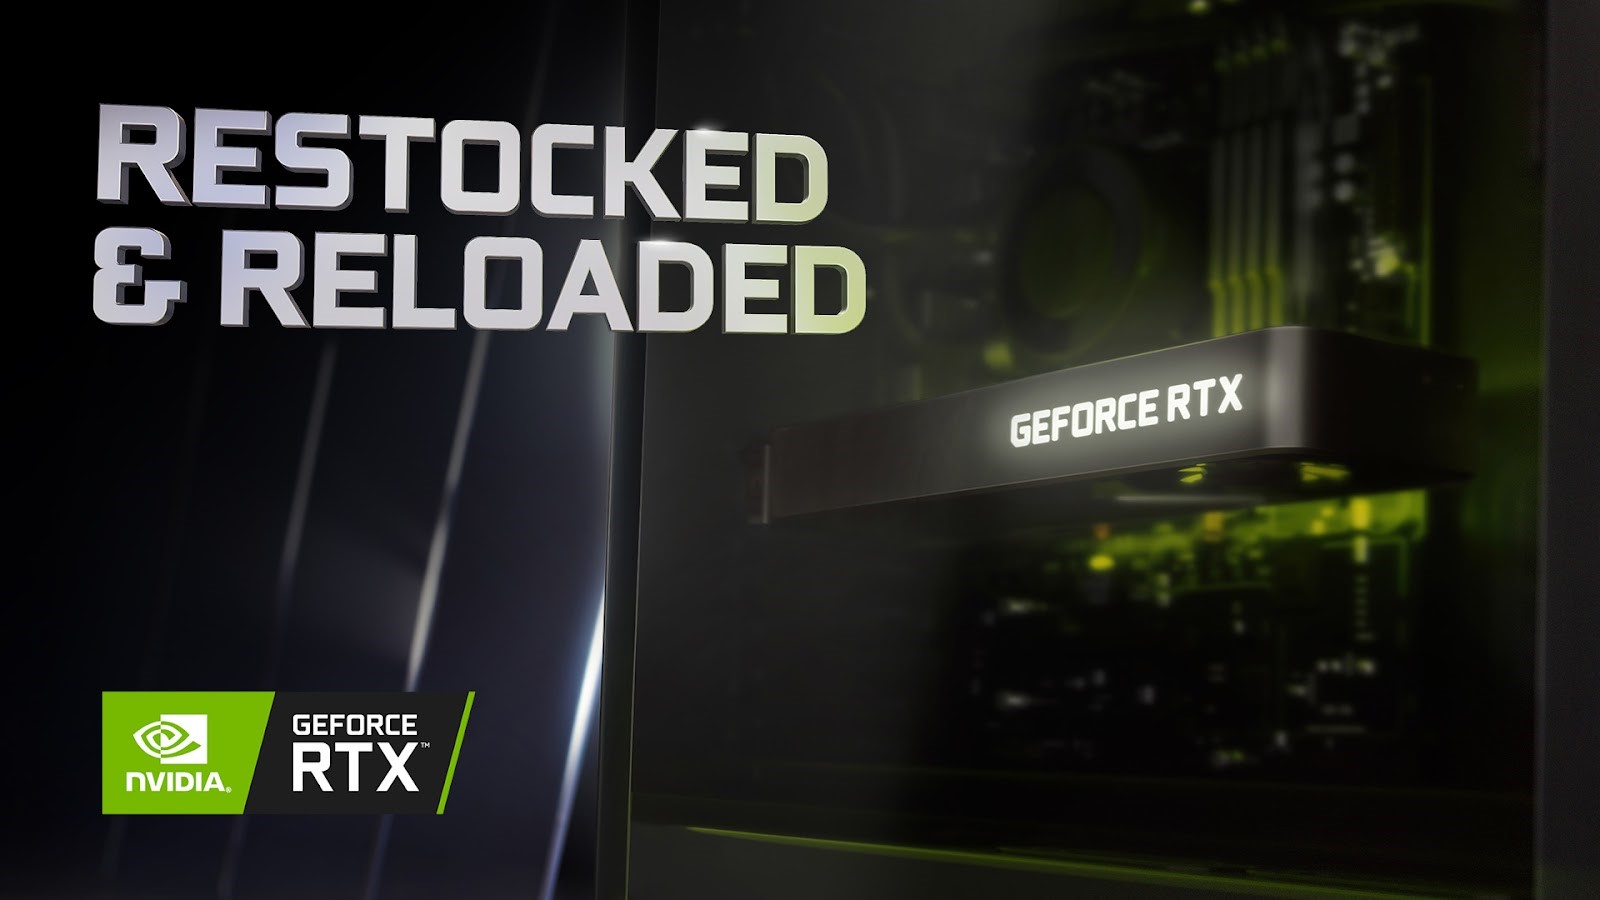 Dòng GPU GeForce RTX 30 Series từ NVIDIA được nhập hàng trở lại tại Việt Nam